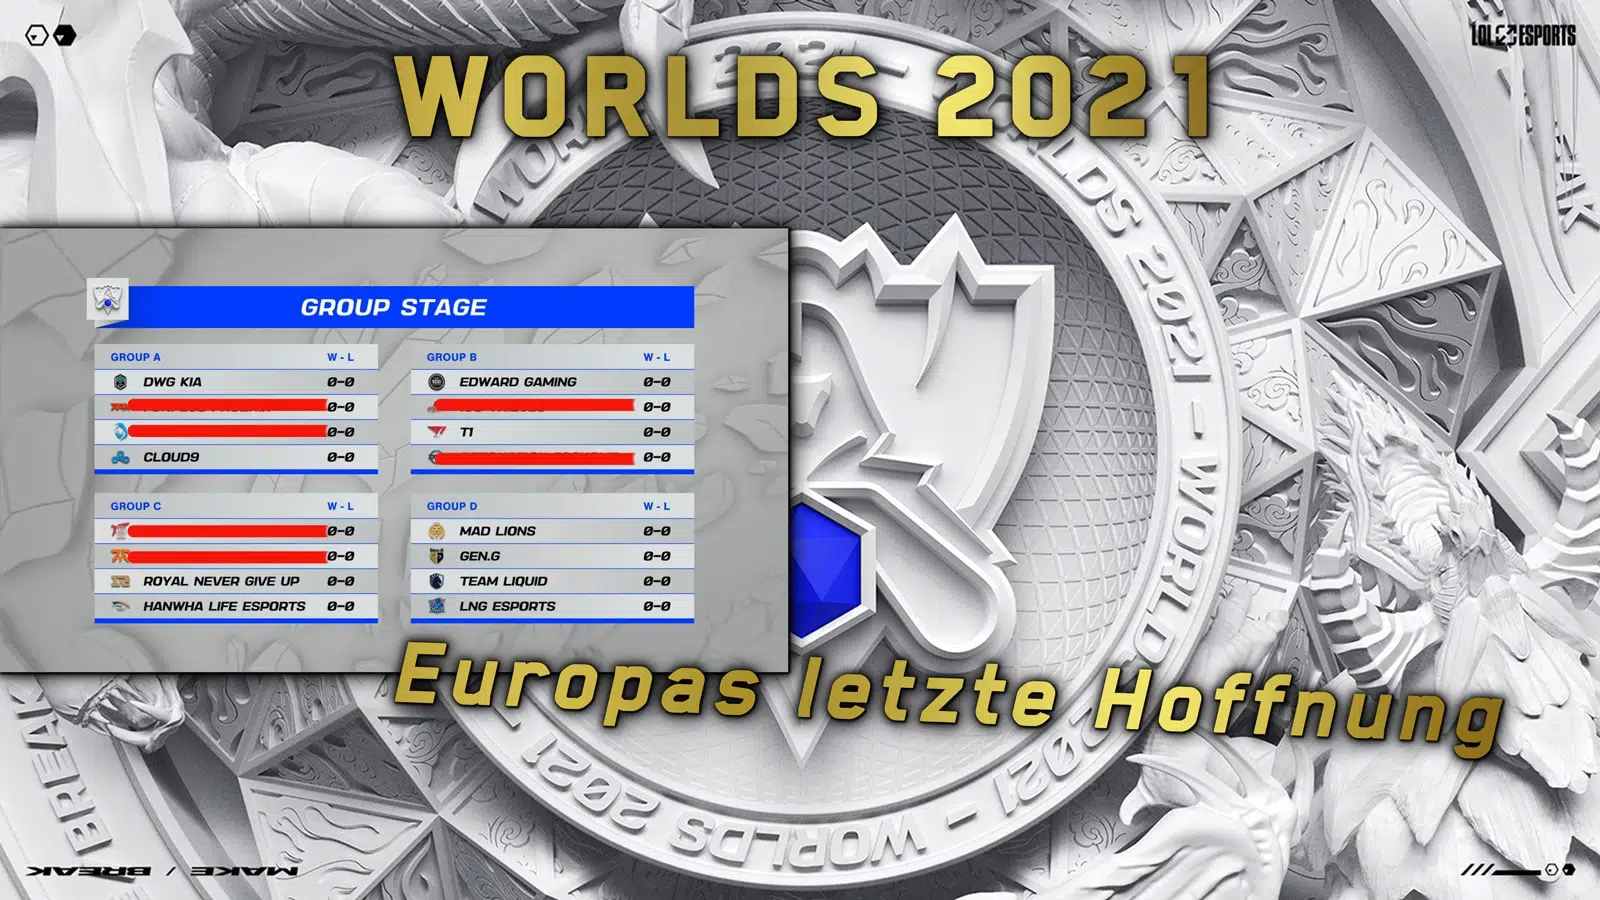 Worlds 2021 europas letzte hoffnung